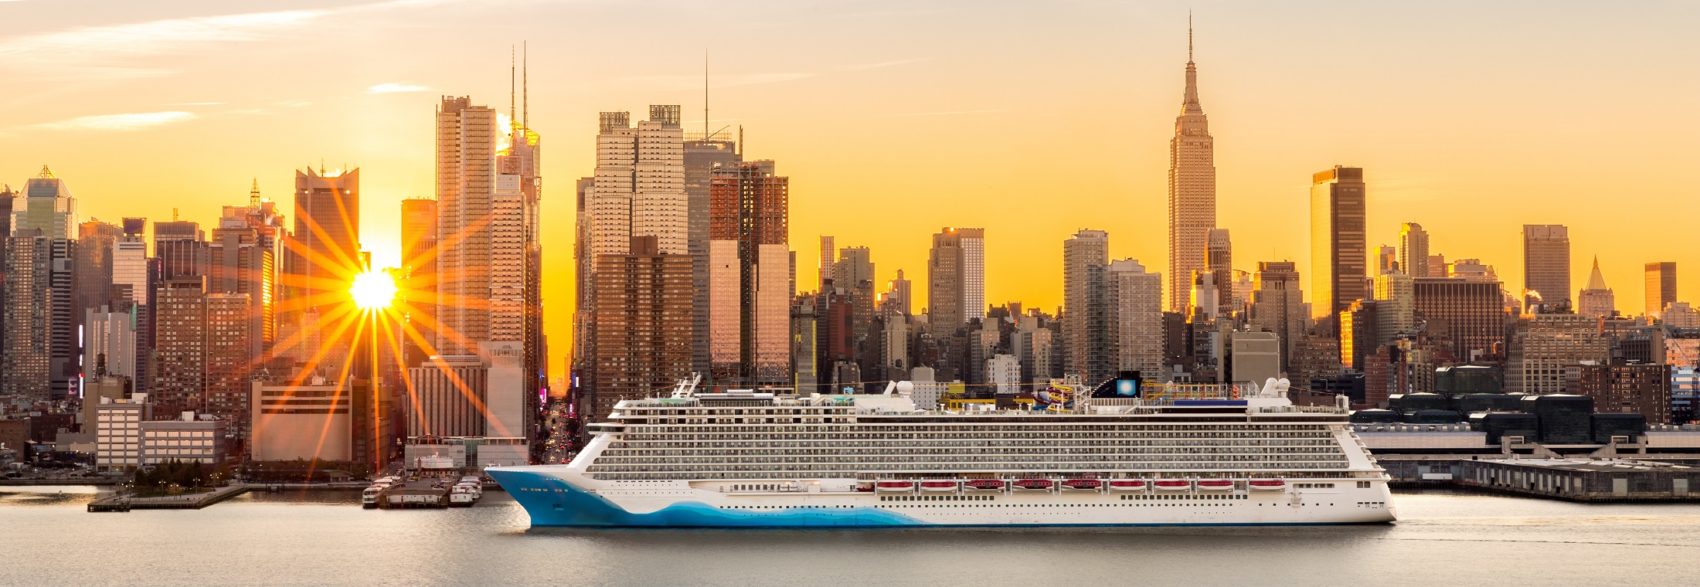 New York Cruise